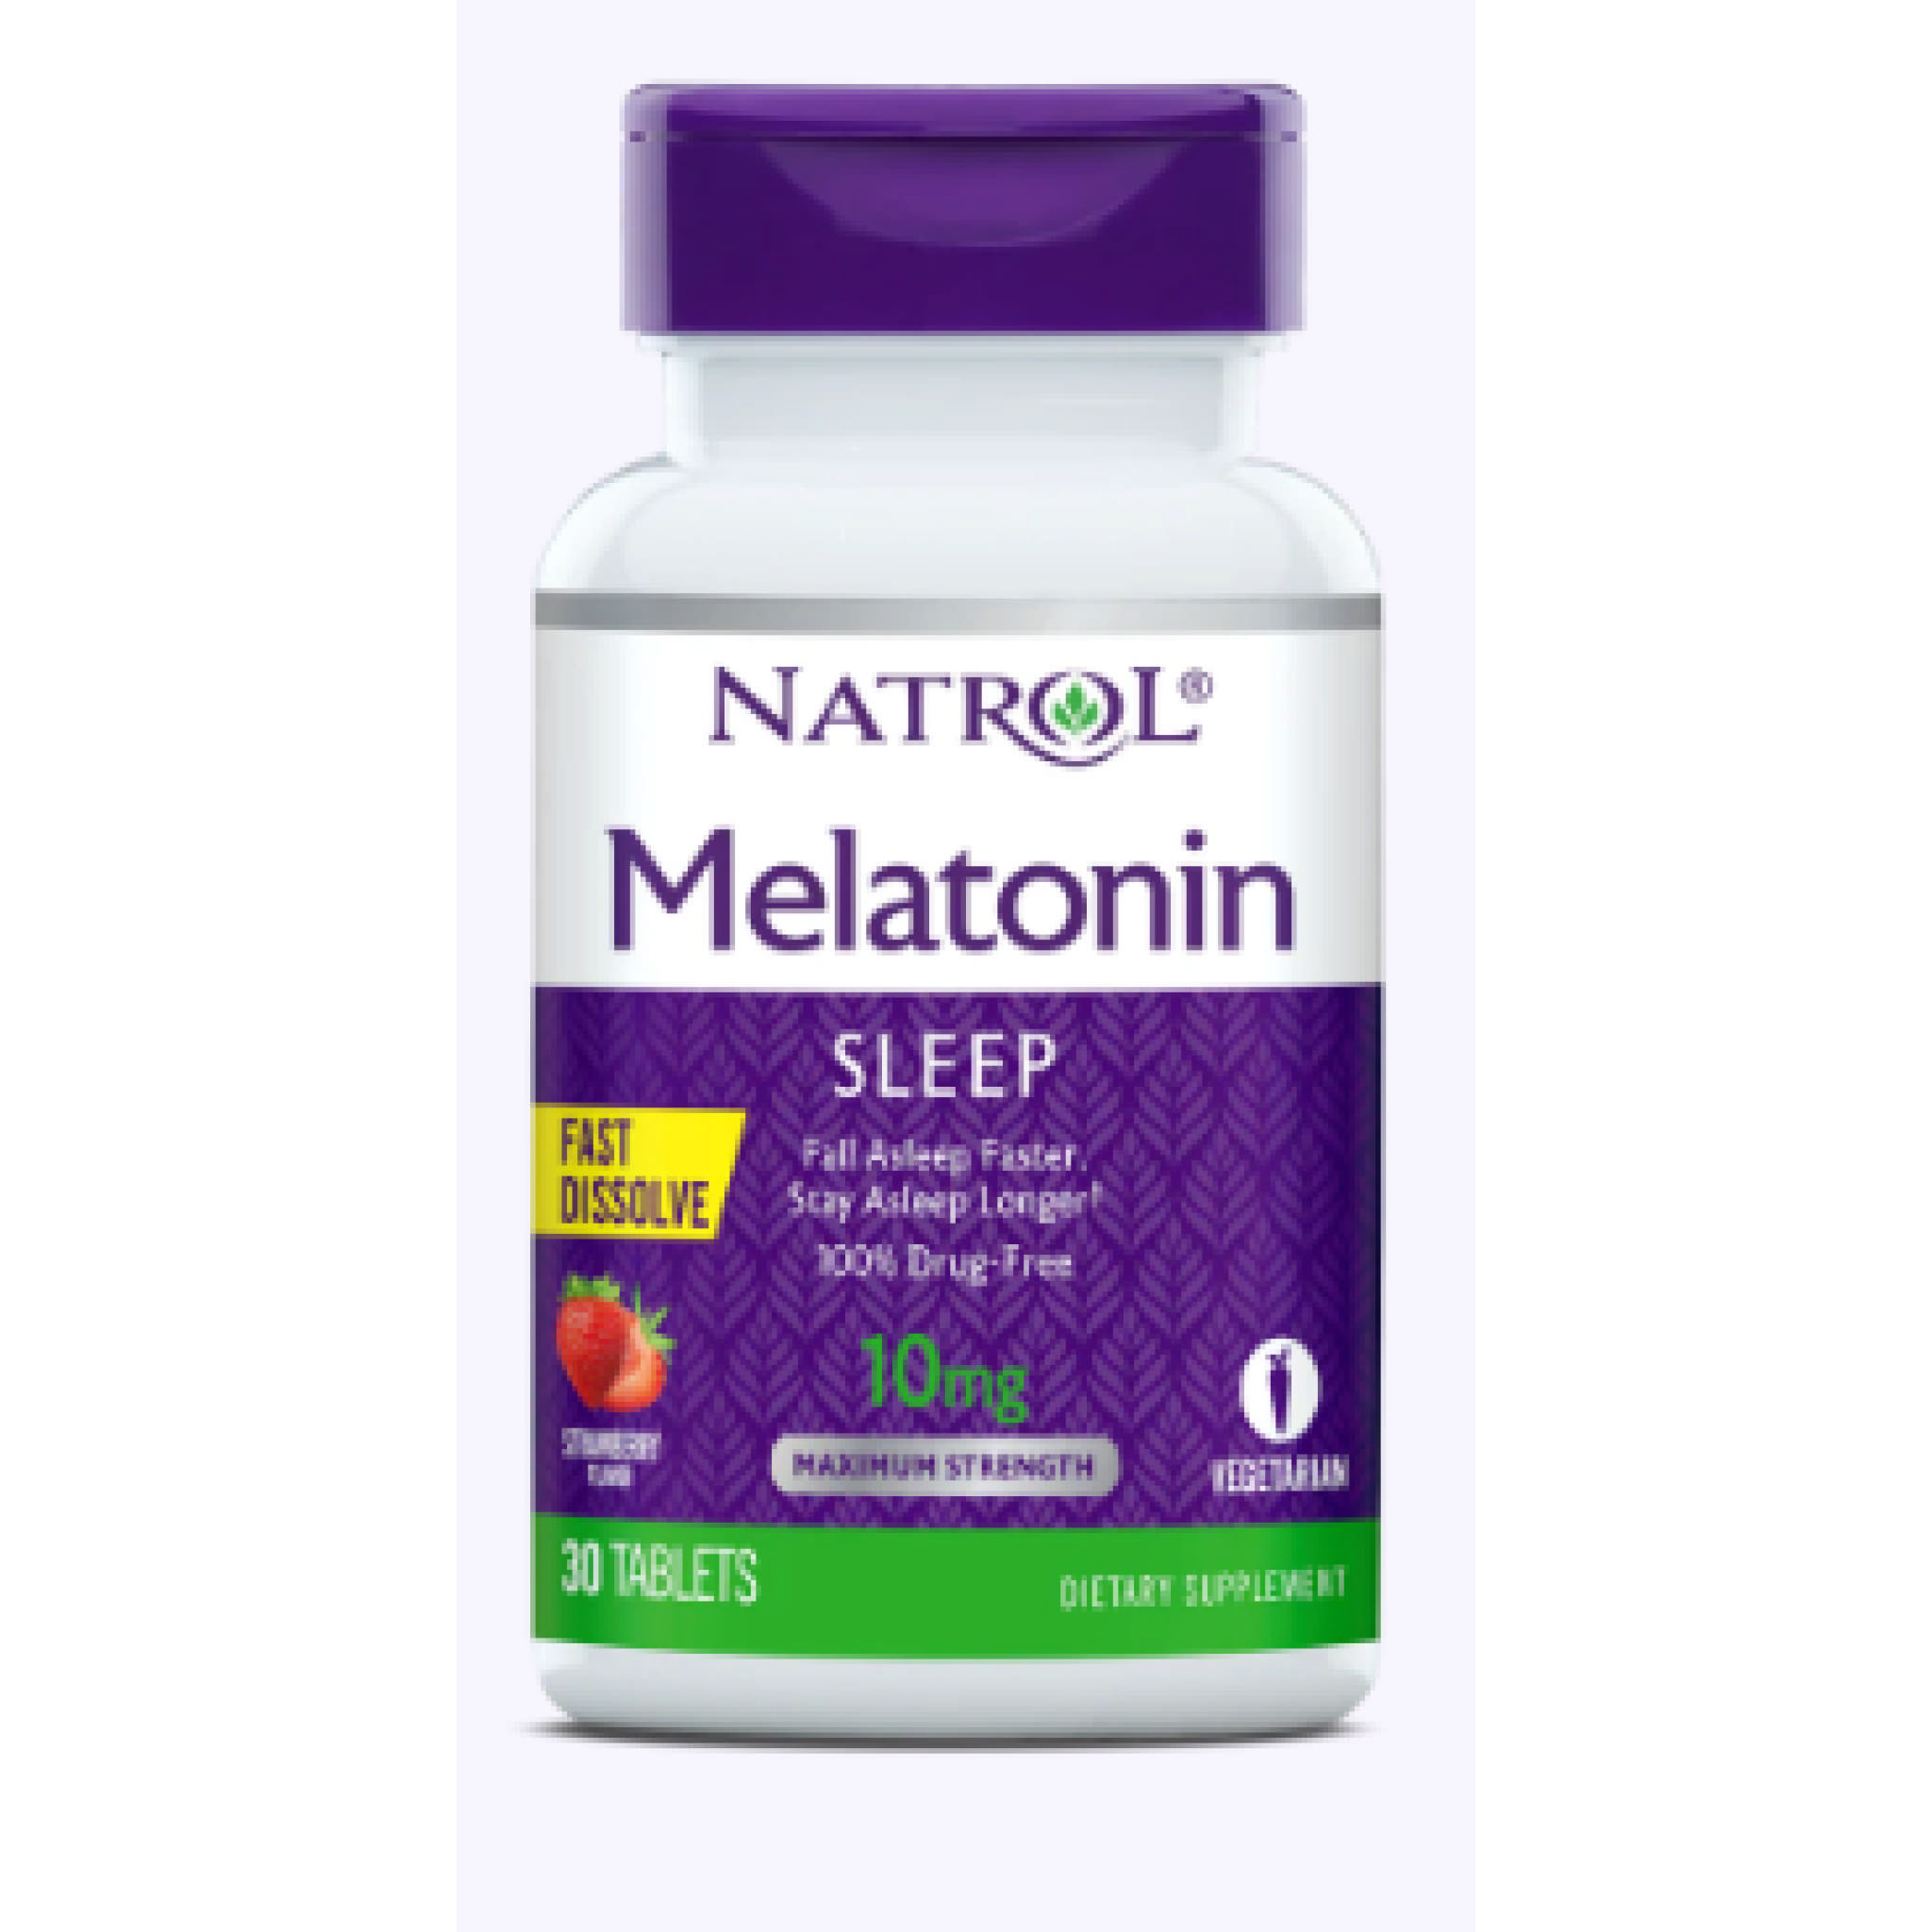 Natrol - Melatonin 10 mg Fast Diss